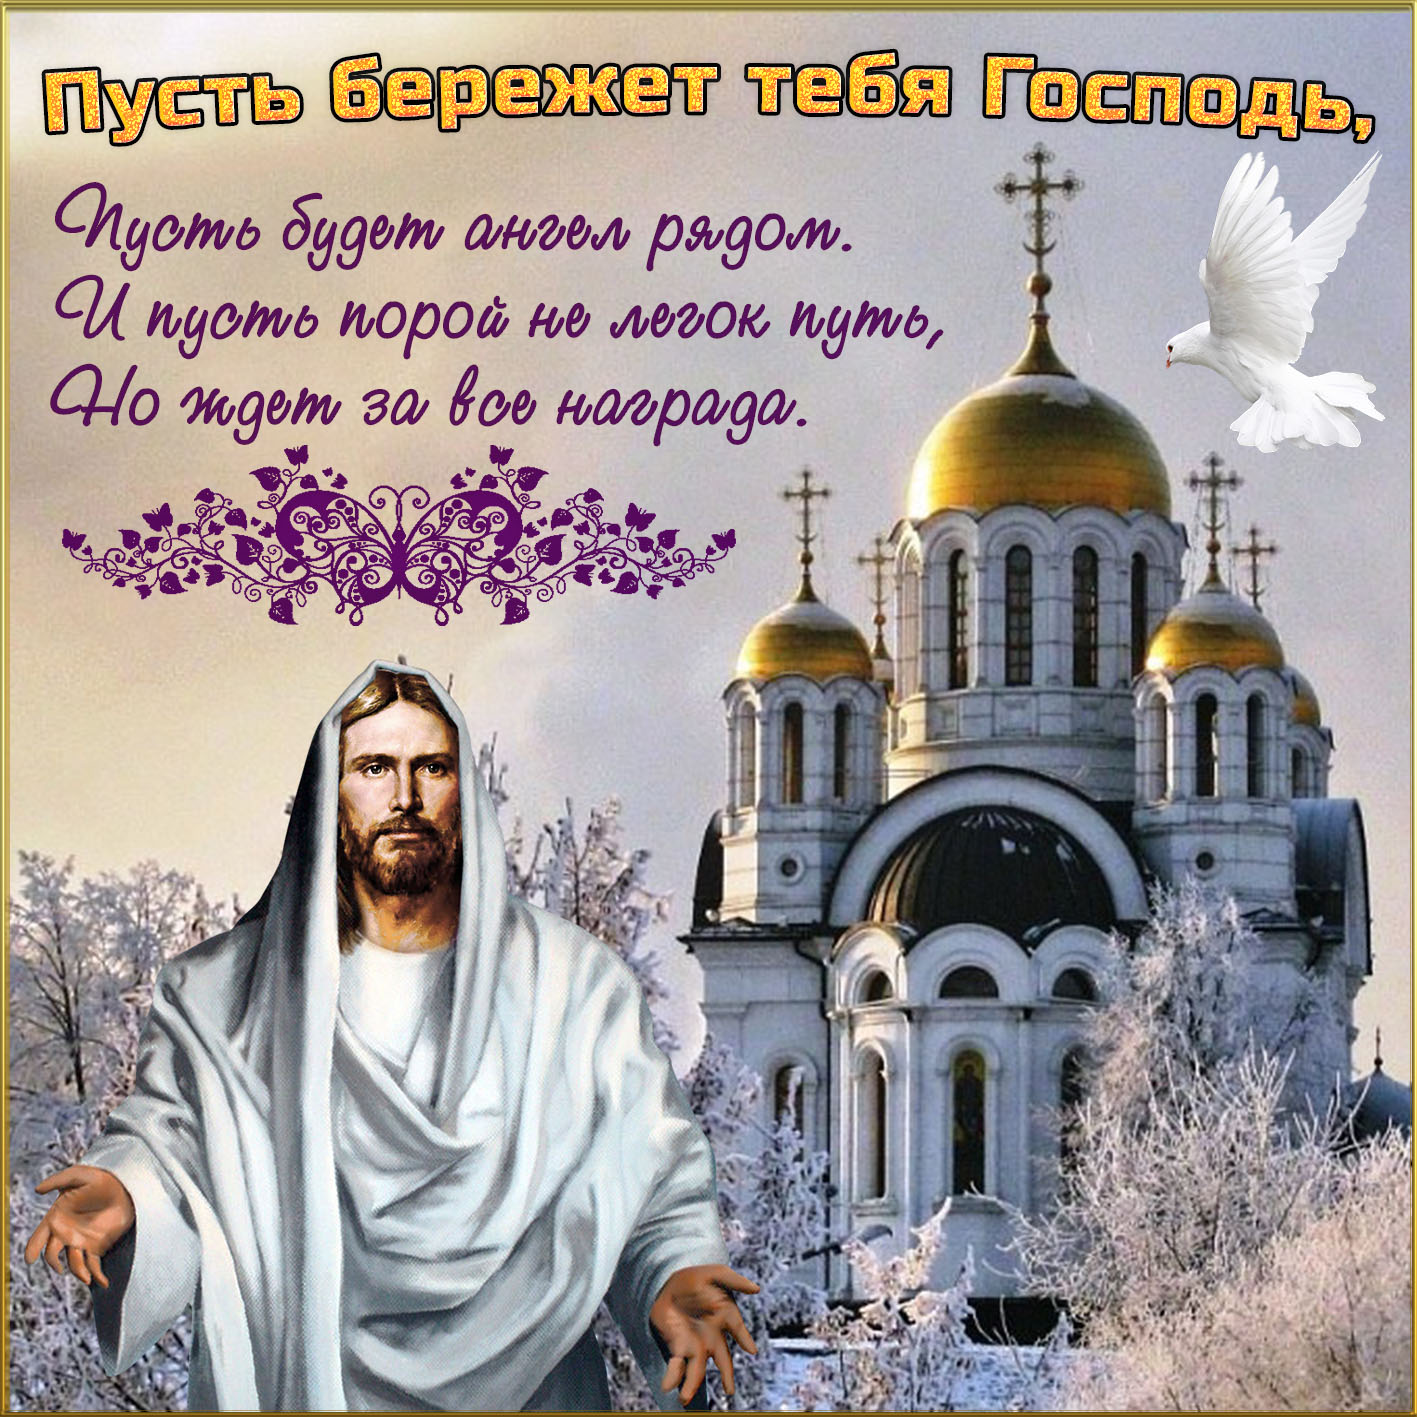 Православная картинка пусть бог тебя хранит